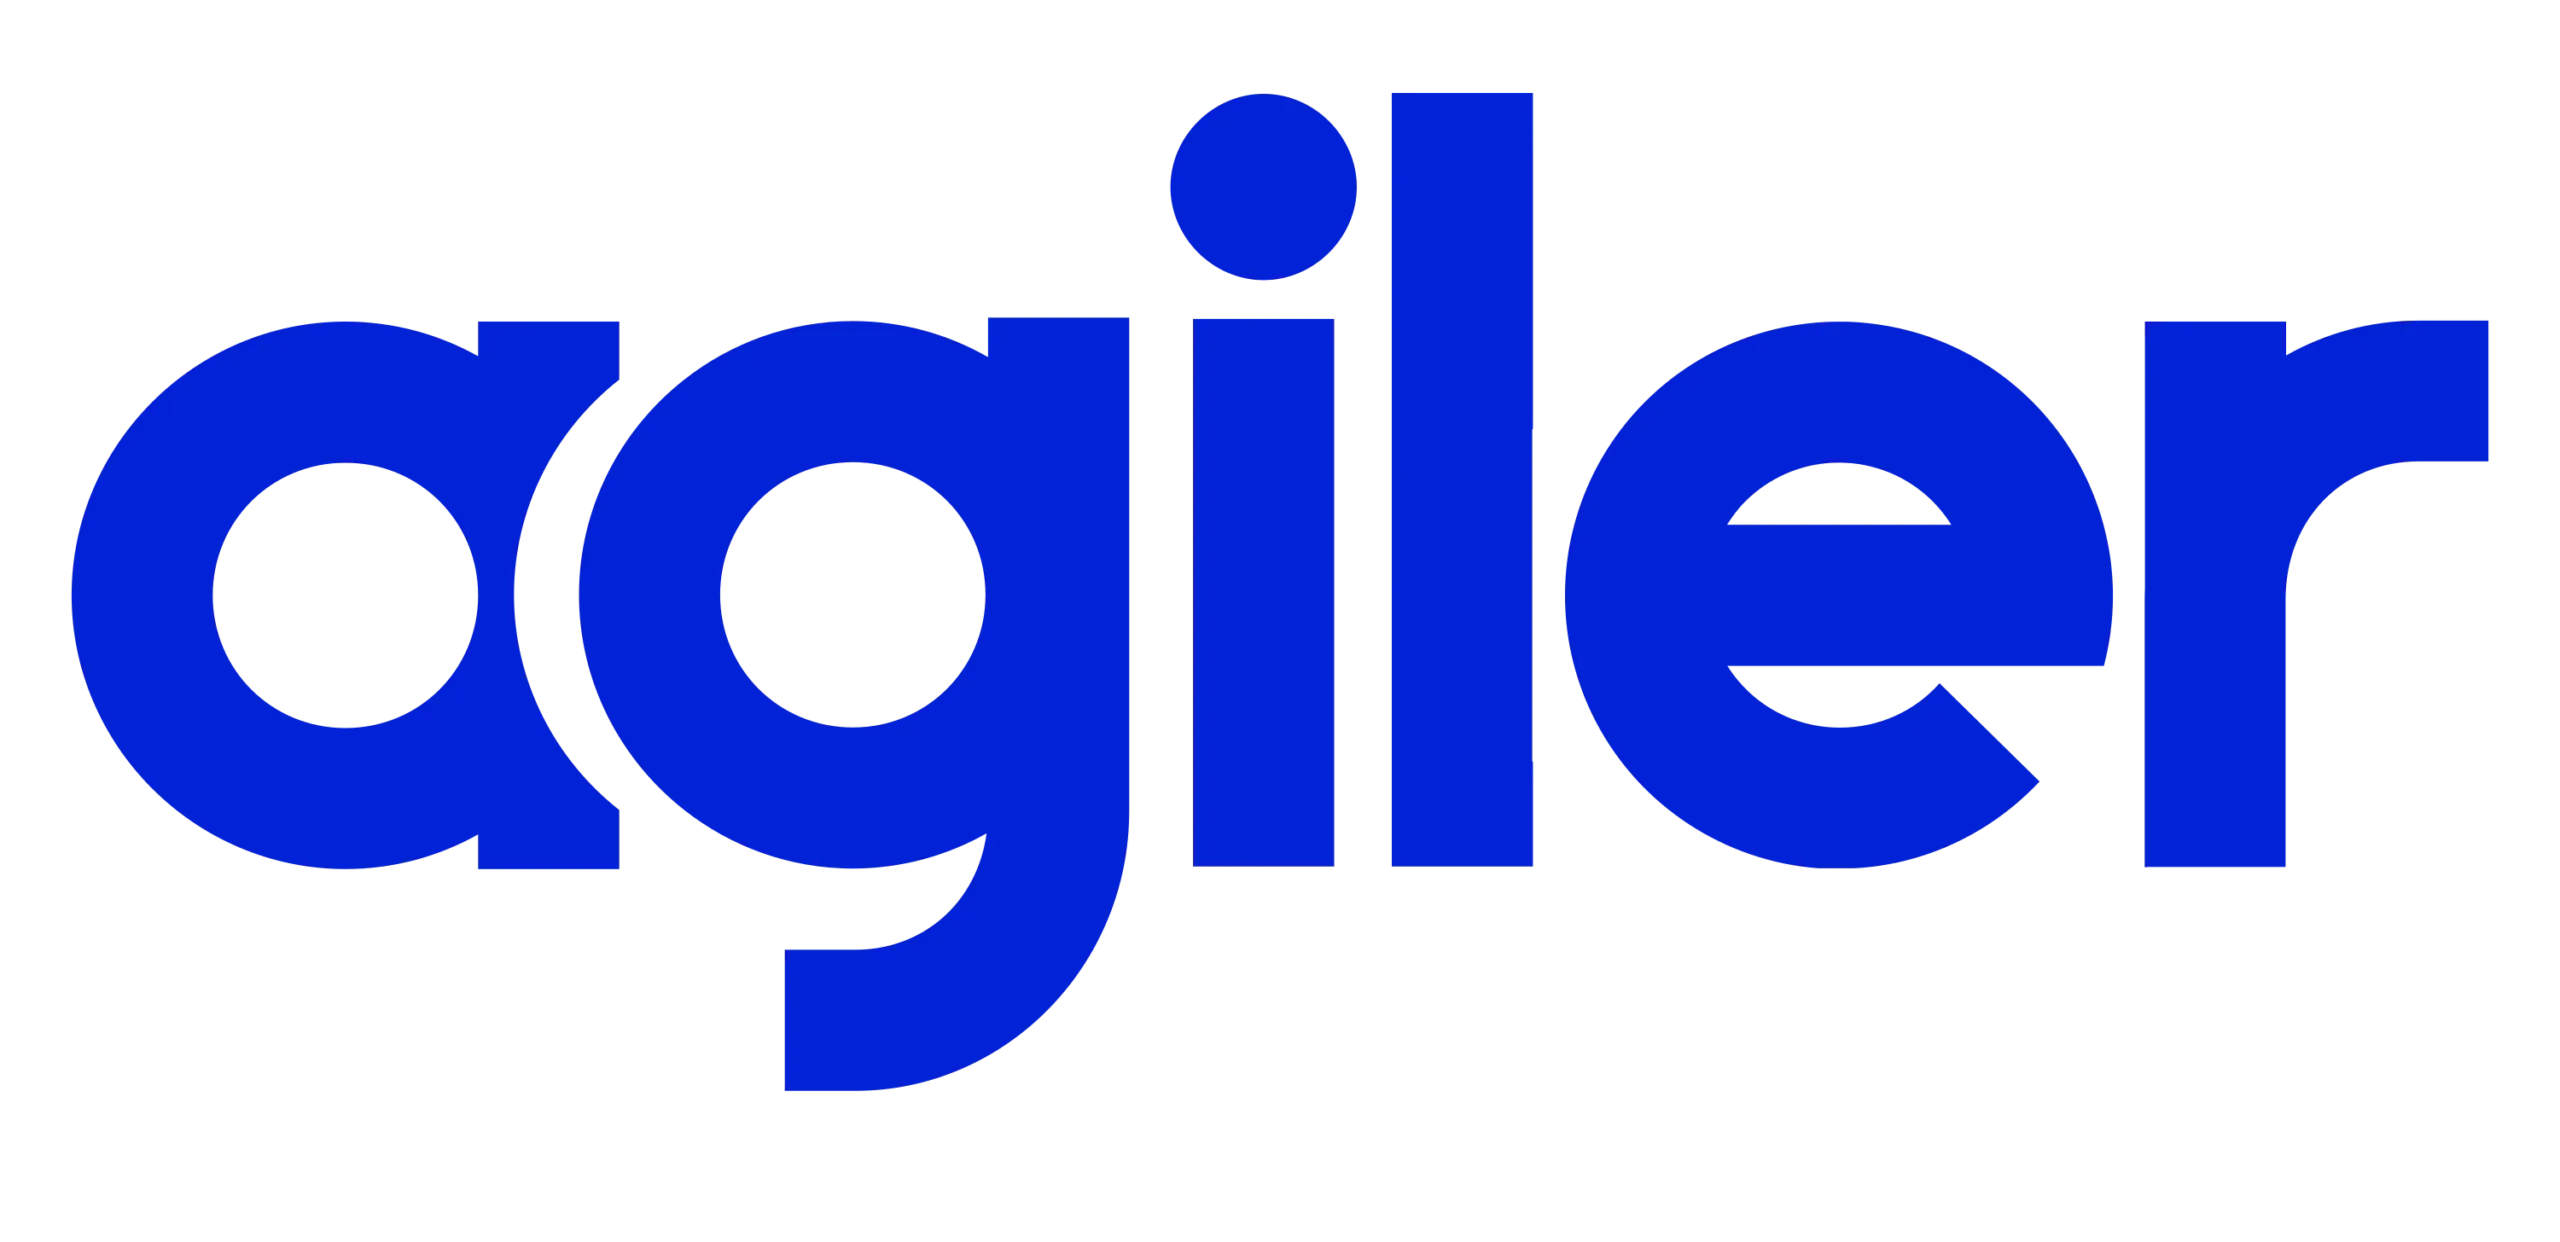 Niebieskie logo Agiler na przezroczystym tle podkreśla tożsamość marki.